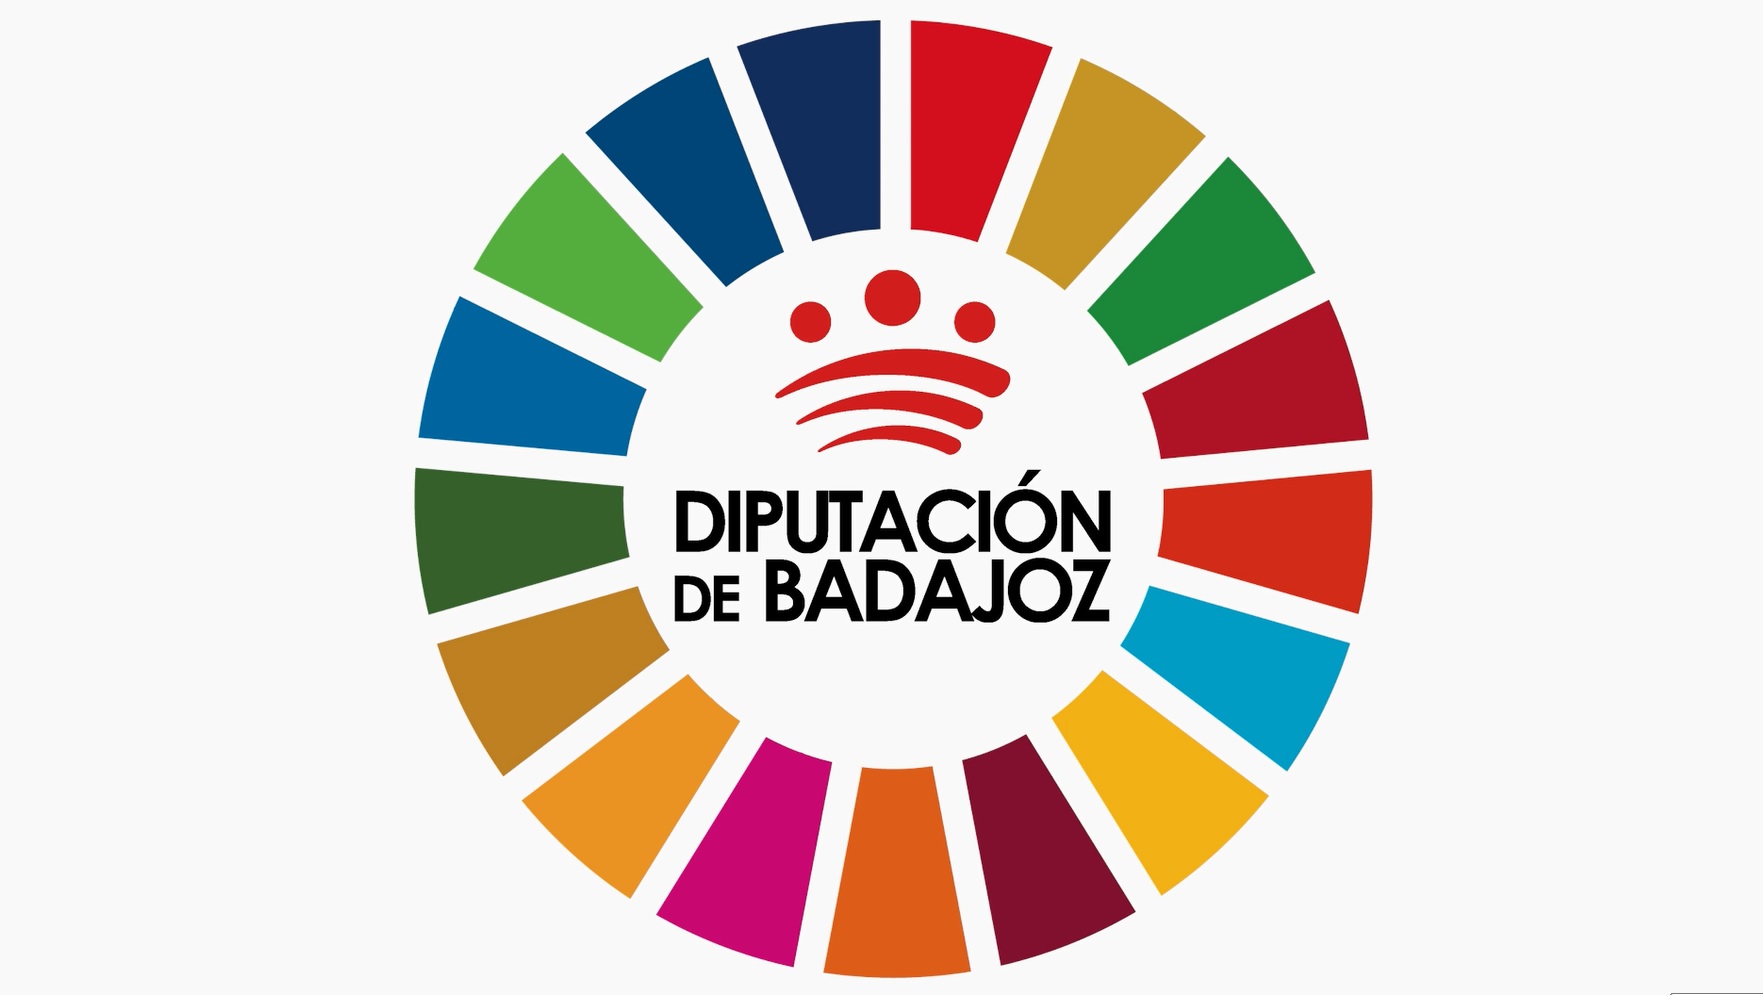 La Diputación de Badajoz conmemora el 5º Aniversario de los Objetivos de Desarrollo Sostenible